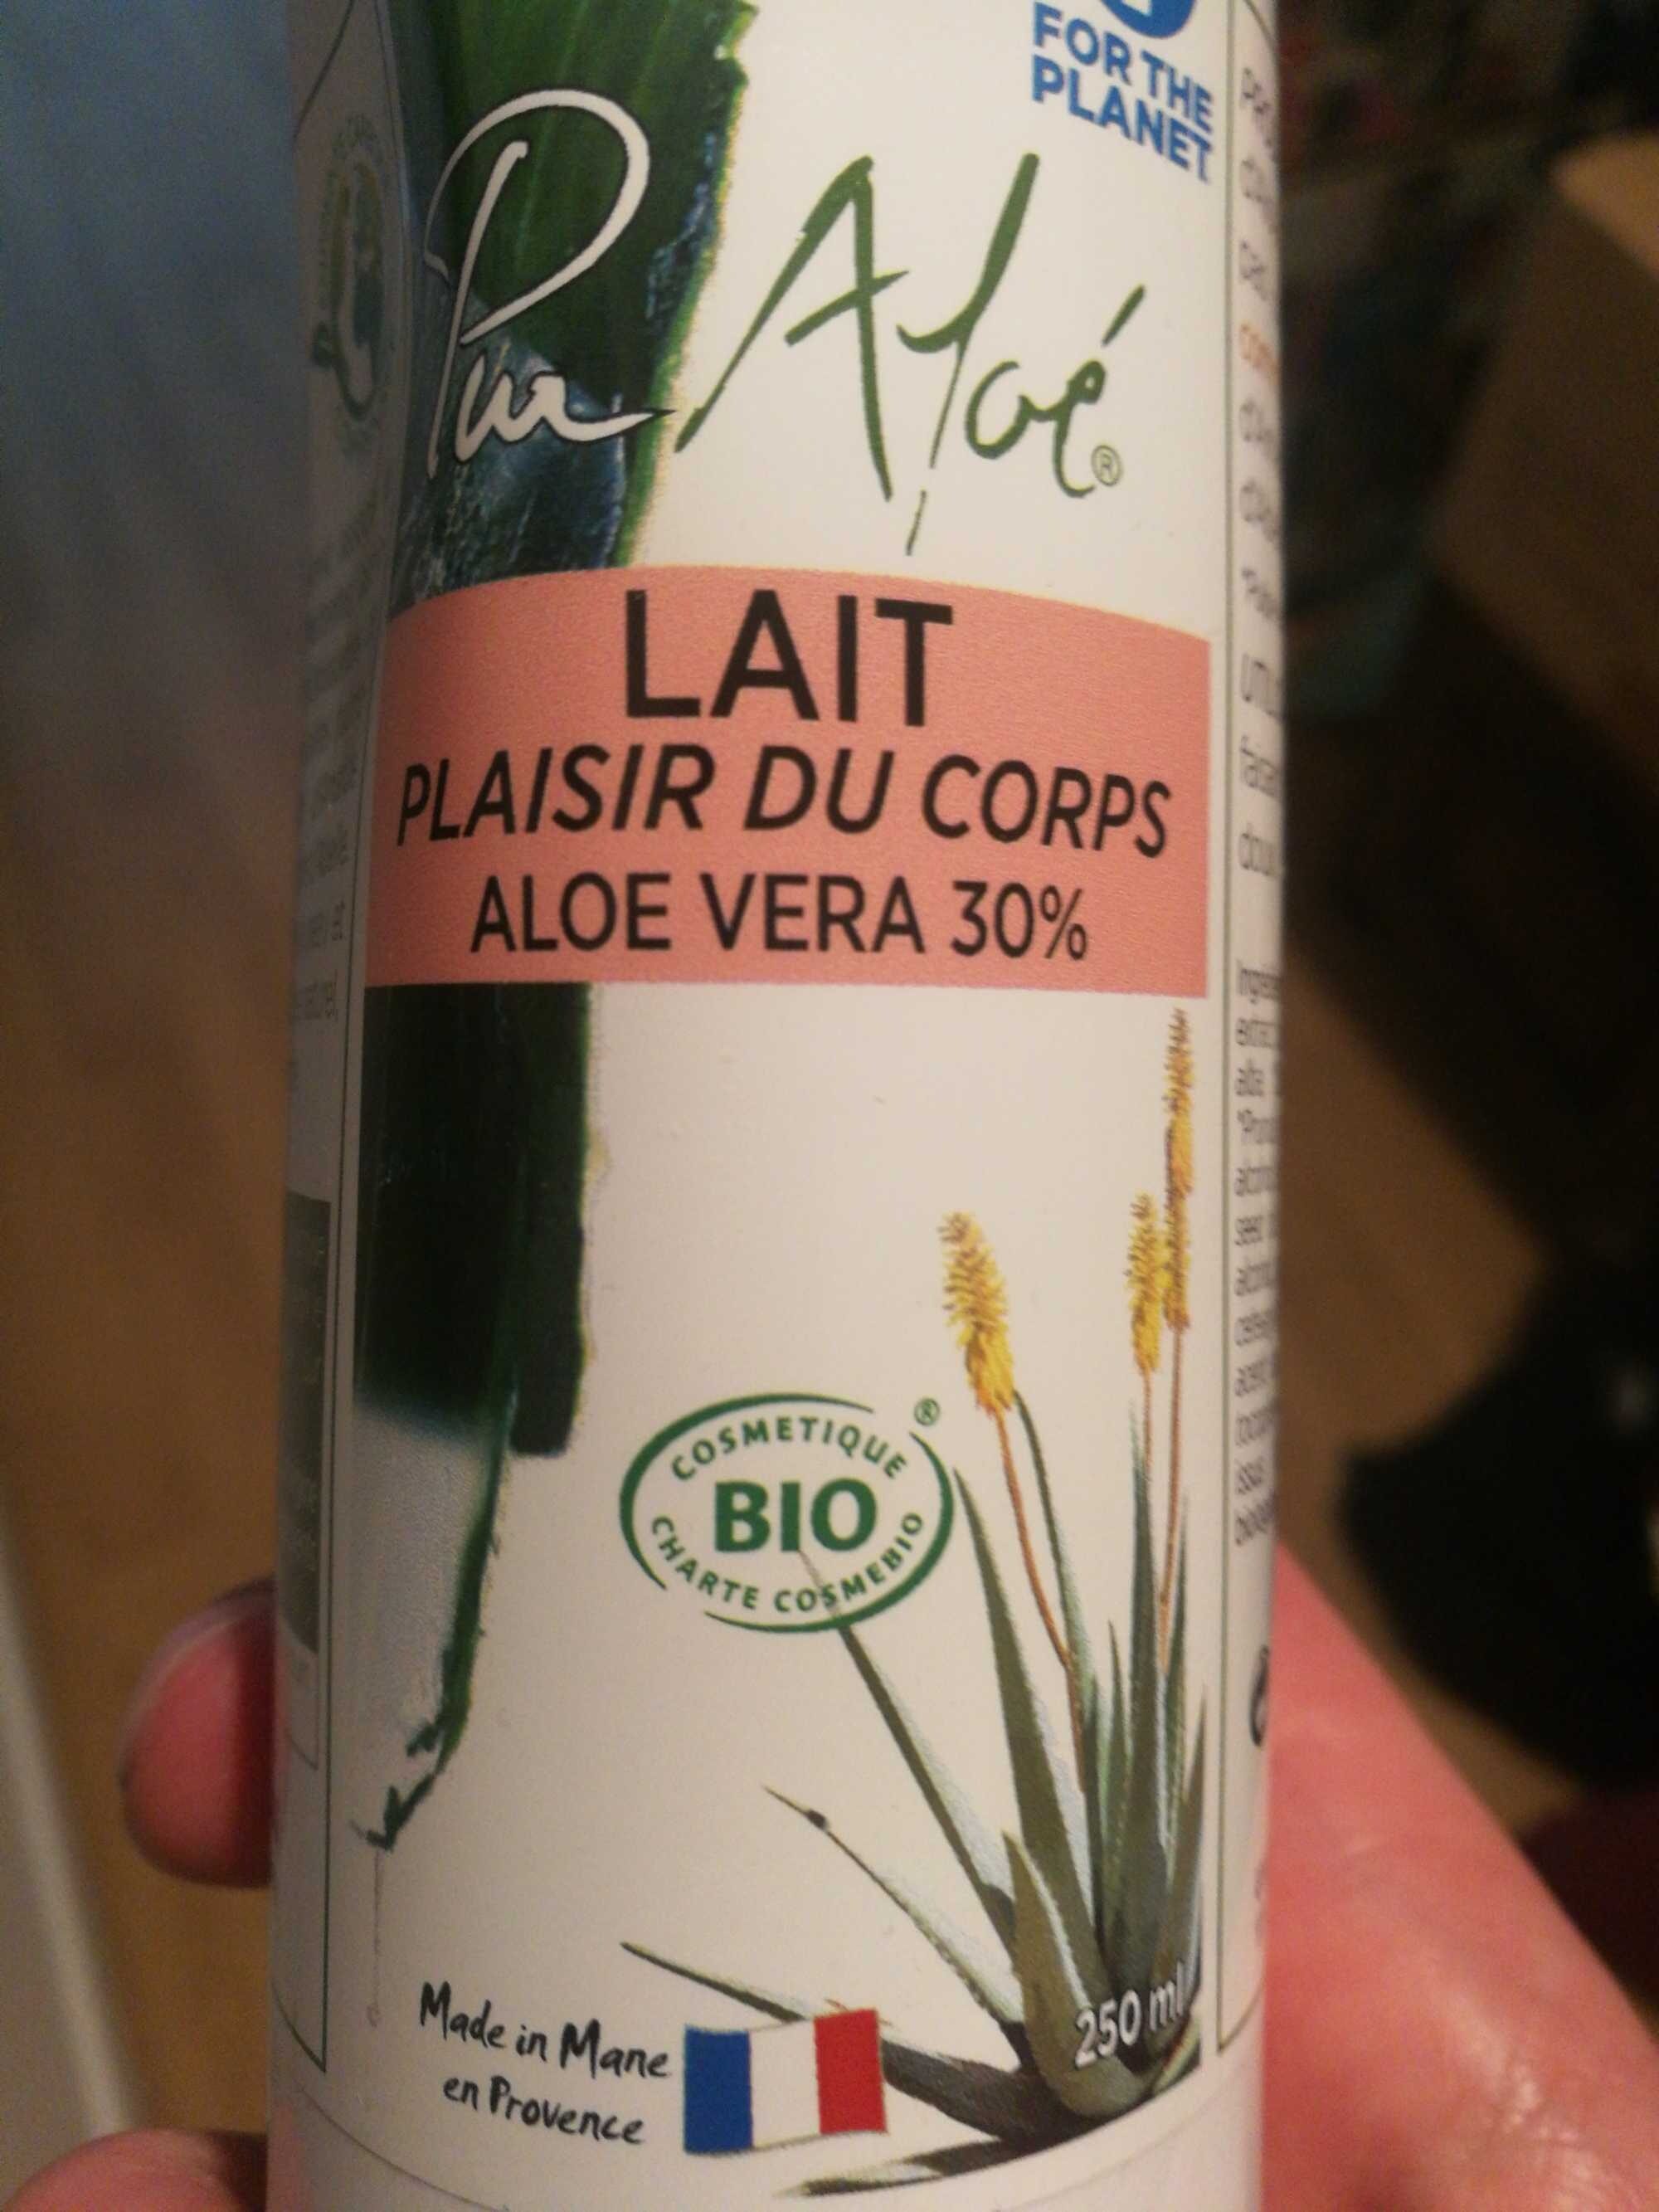 Lait plaisir du corps Aloe Vera 30% - Produit - fr